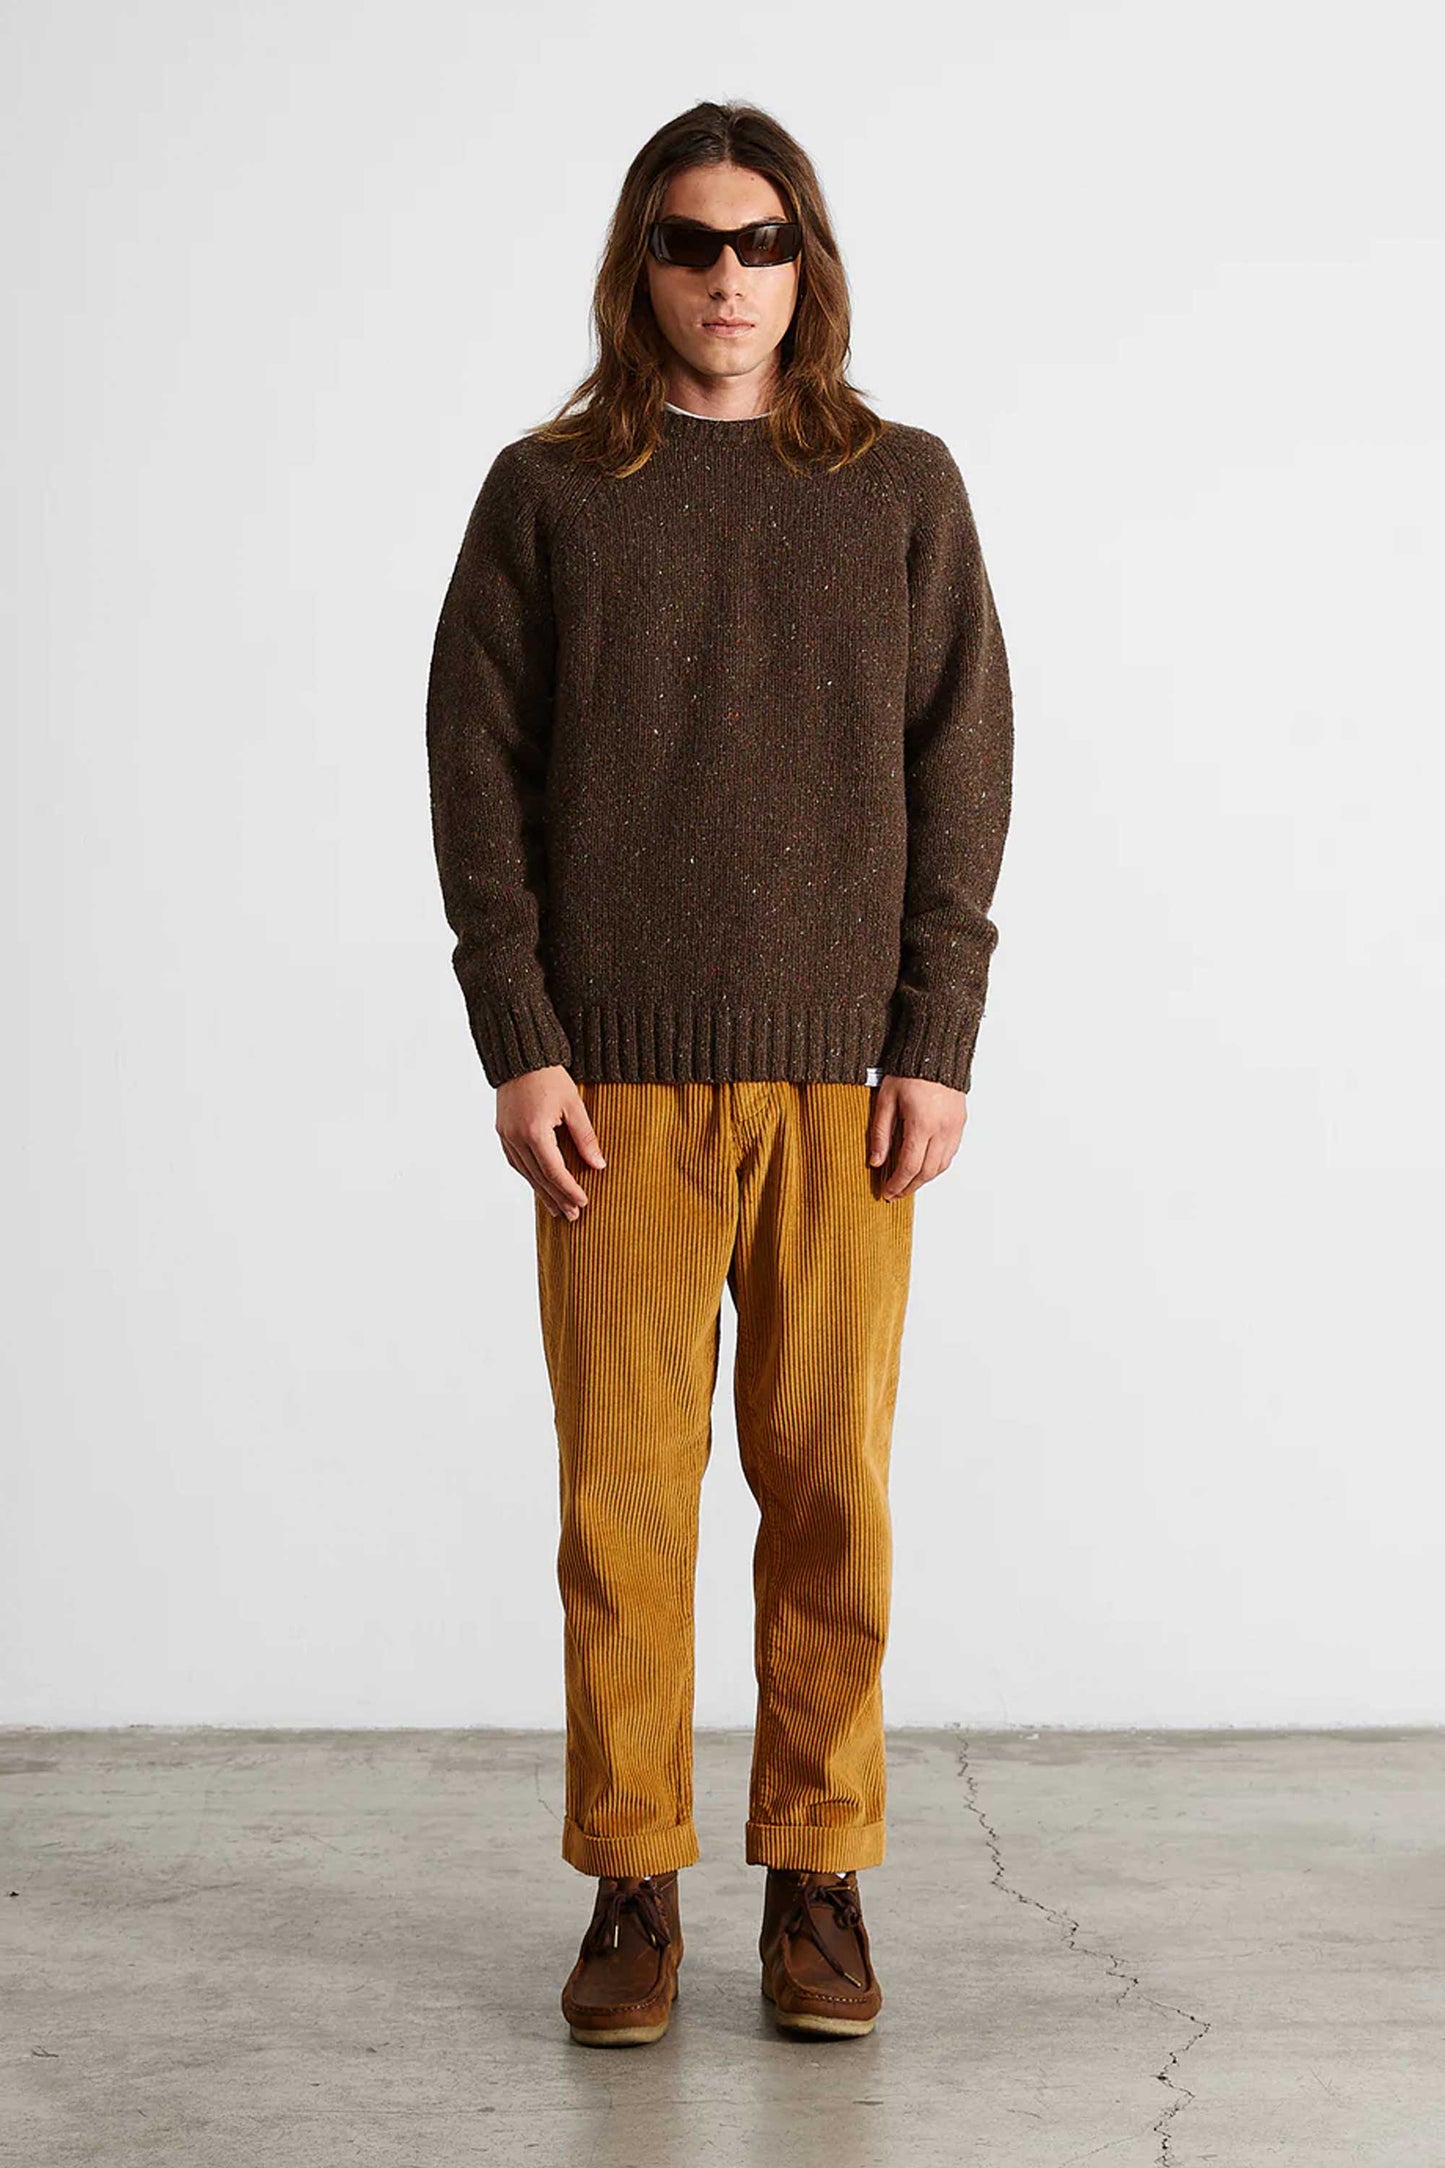 Pukas-Surf-Shop-edmmond-sweater-paris-plain-brown